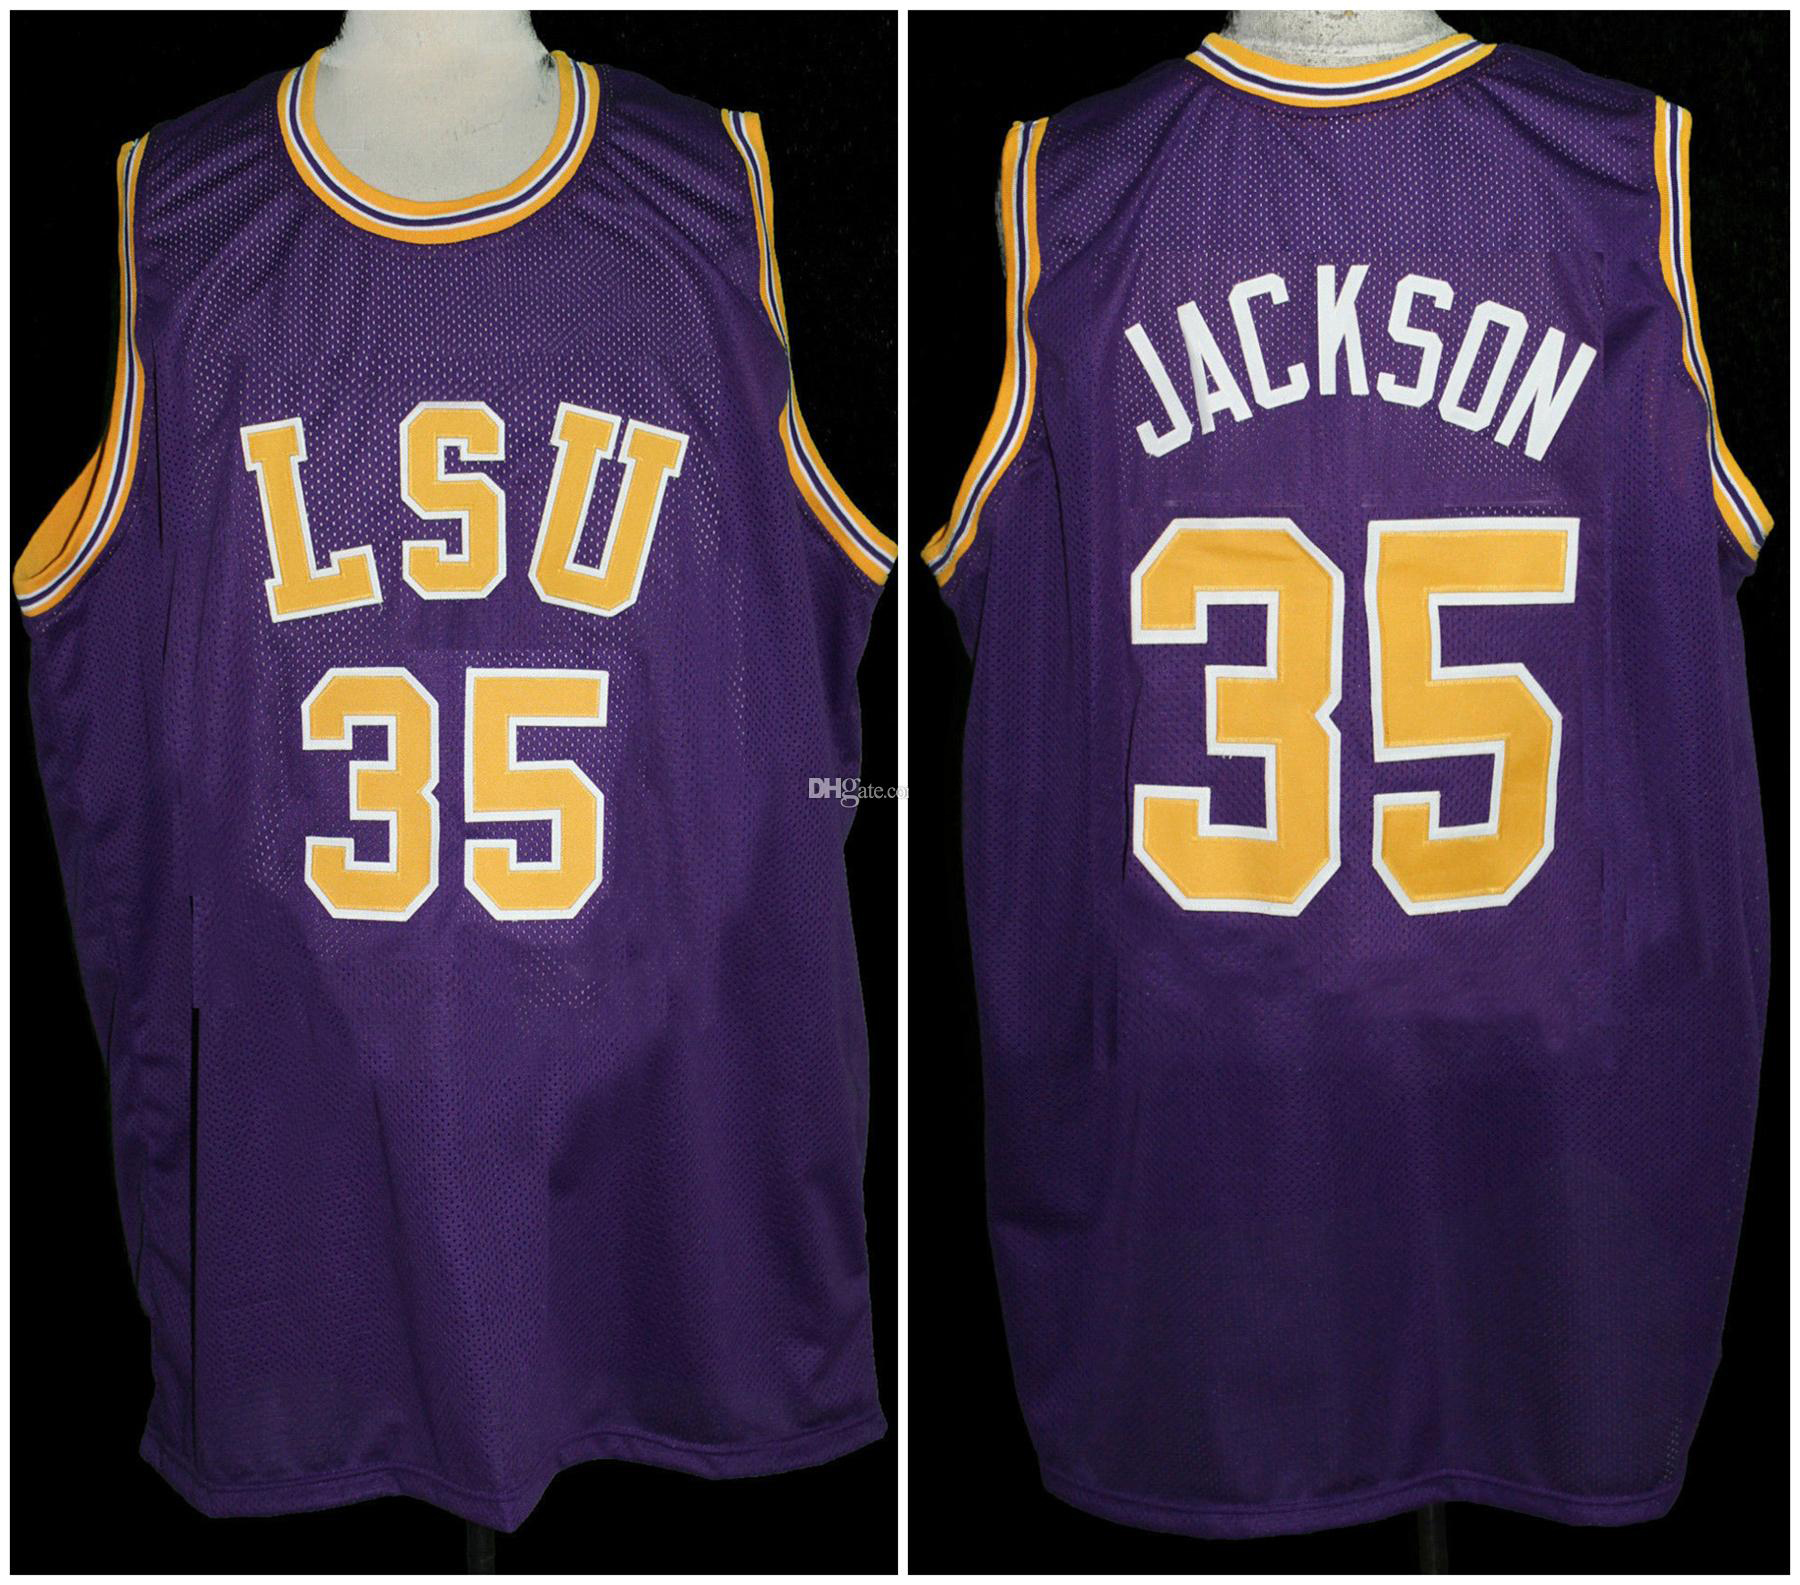 Крис Джексон # 35 LSU Tigers College Retro Basketball Jersey Мужские сшитые на заказ трикотажные изделия с любым номером